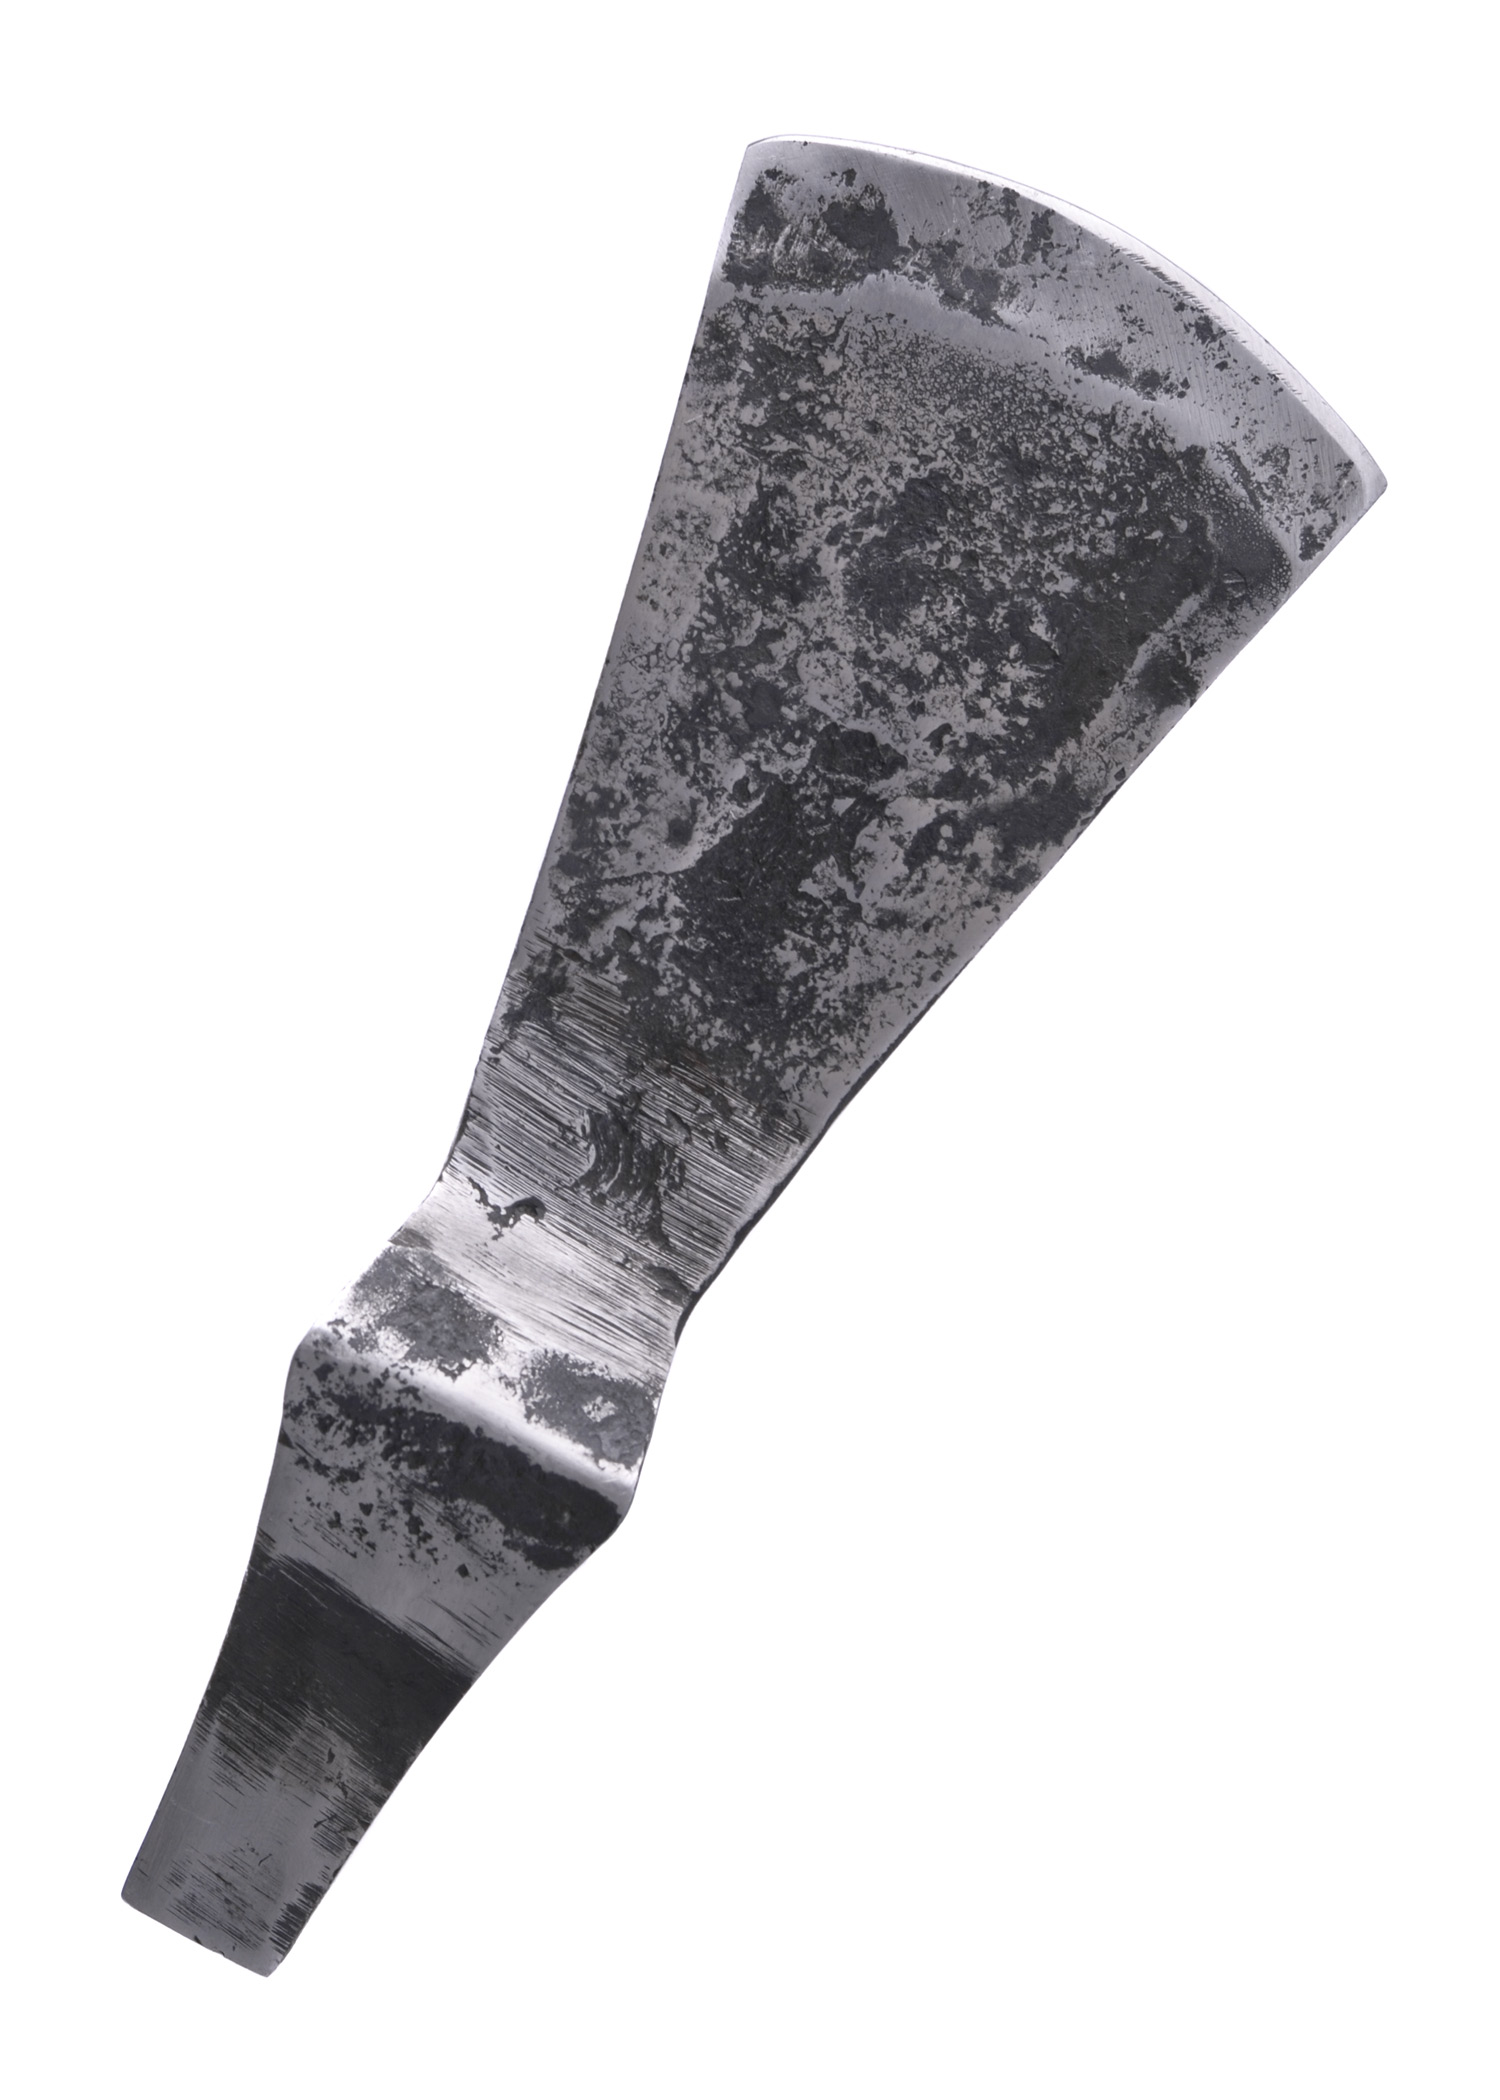 Frühmittelalterliche Hammerkopfaxt, stumpf, ca. 18cm, schaukampf